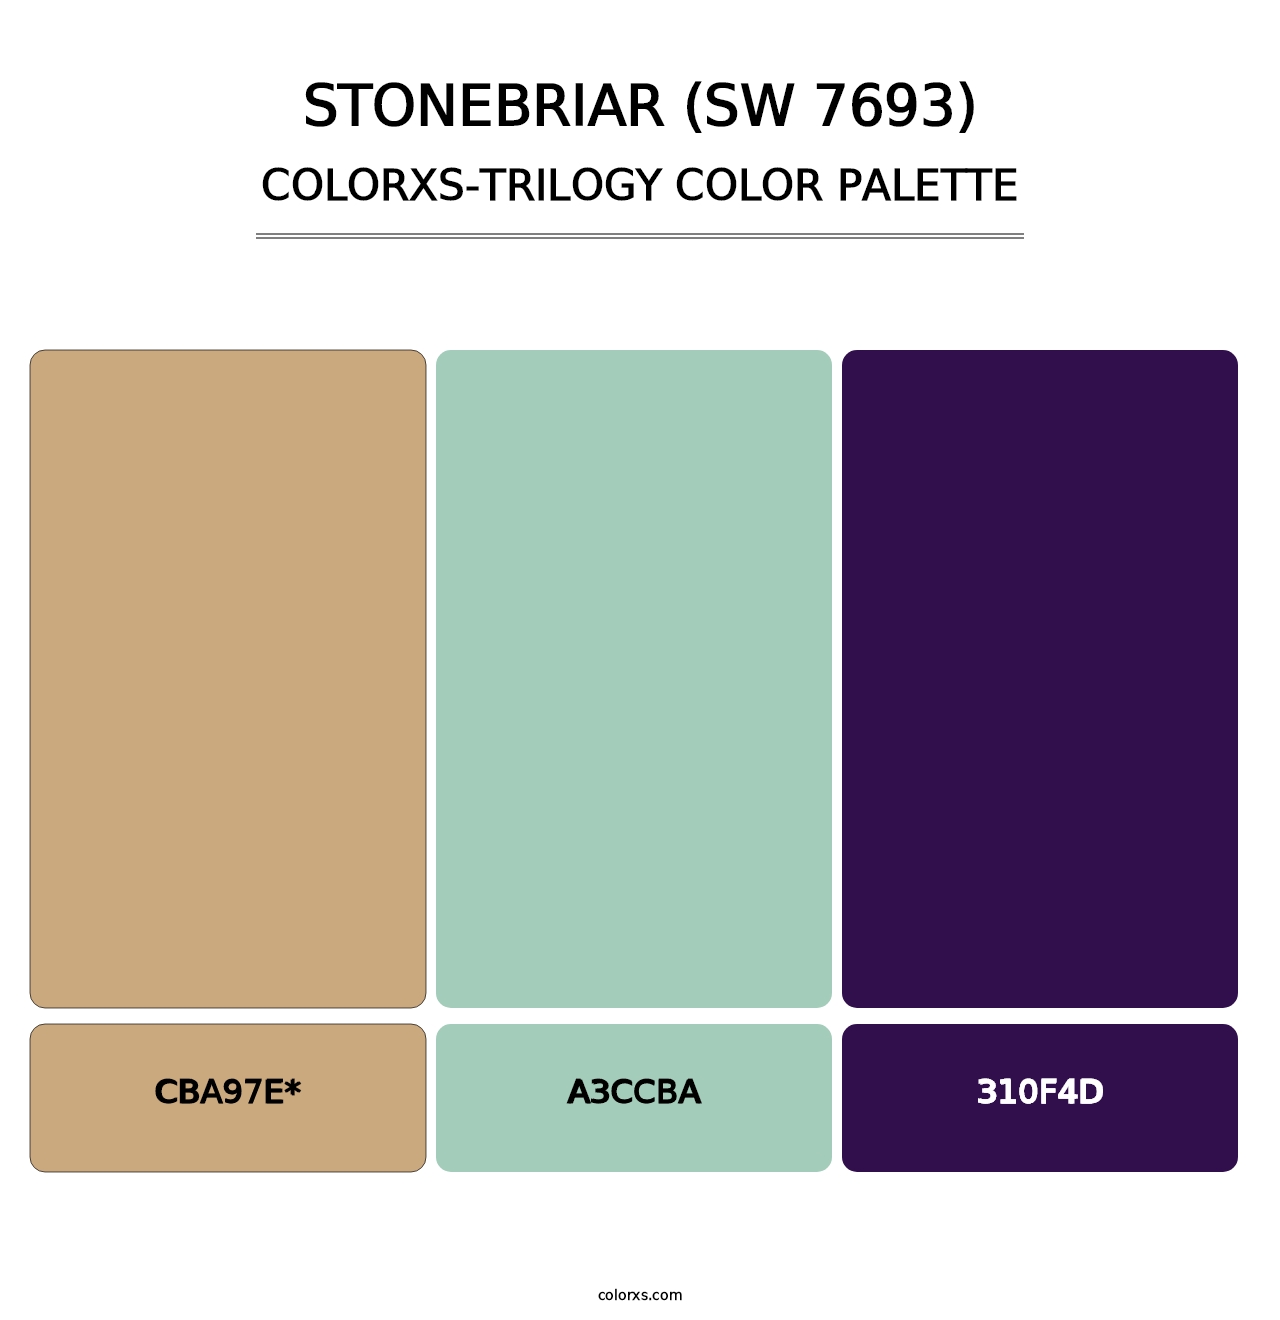 Stonebriar (SW 7693) - Colorxs Trilogy Palette